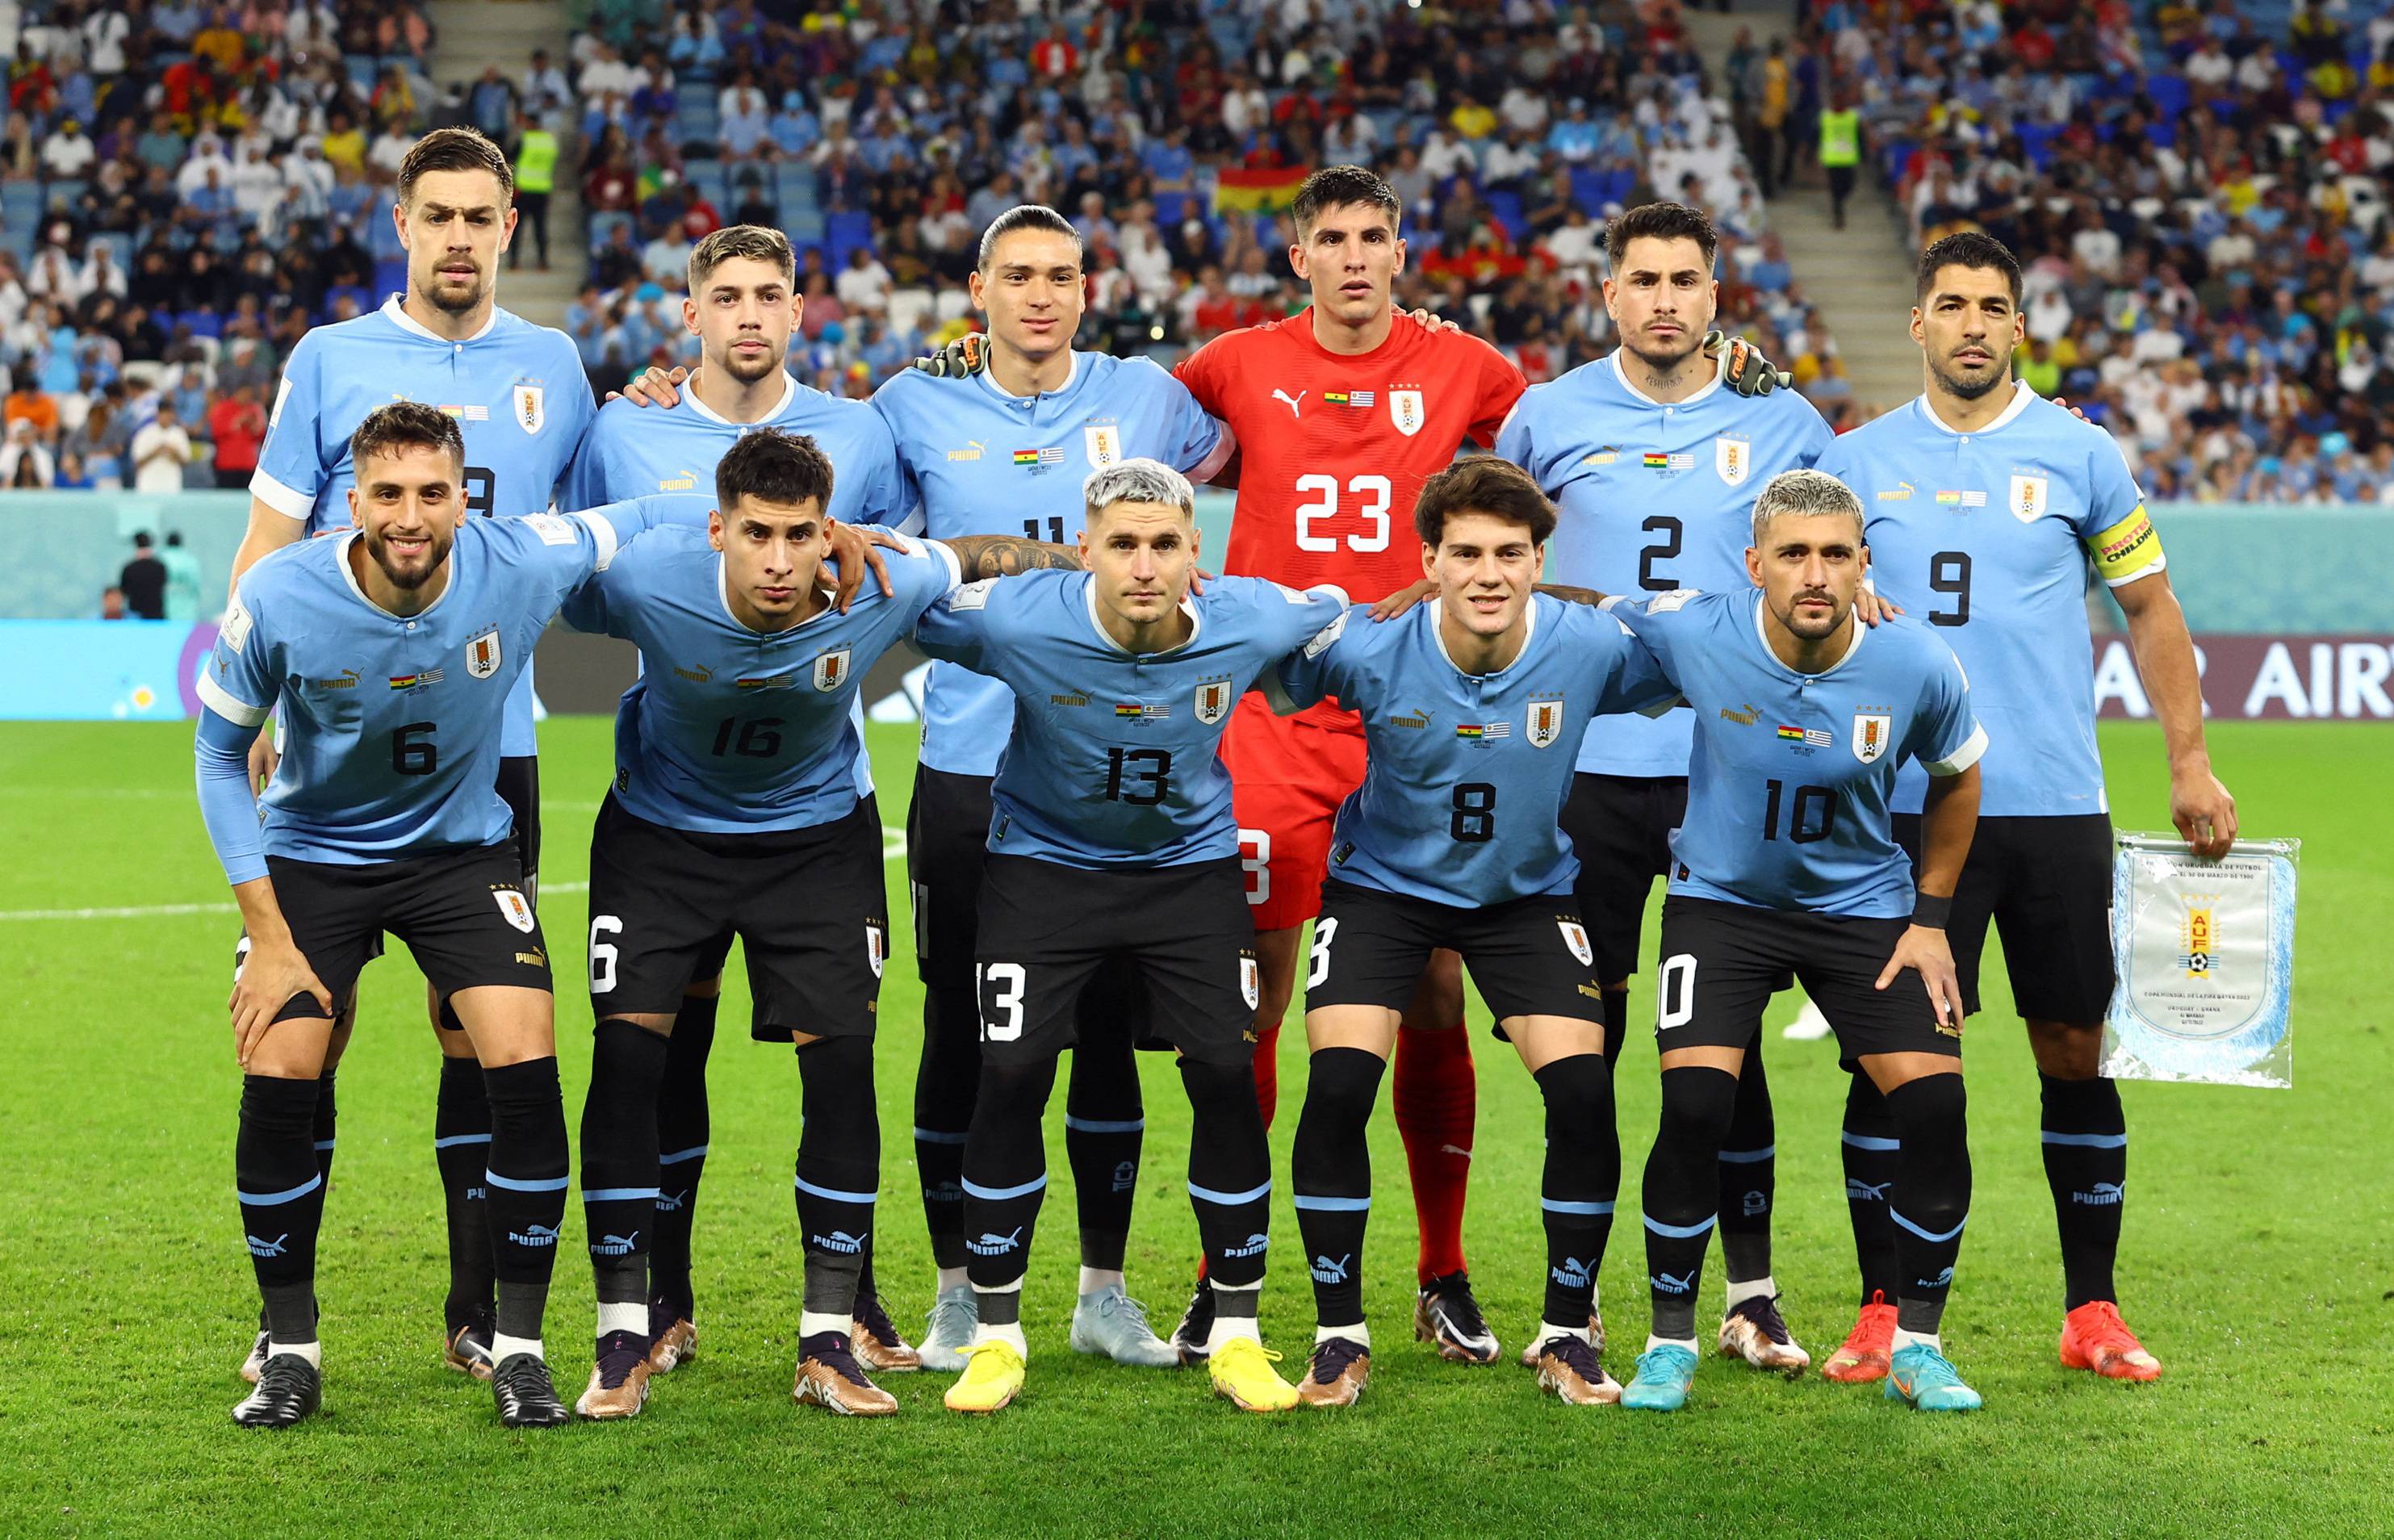 Uruguay Qatar 2022 World Cup, Uruguay Soccer Team 2022 Supporter